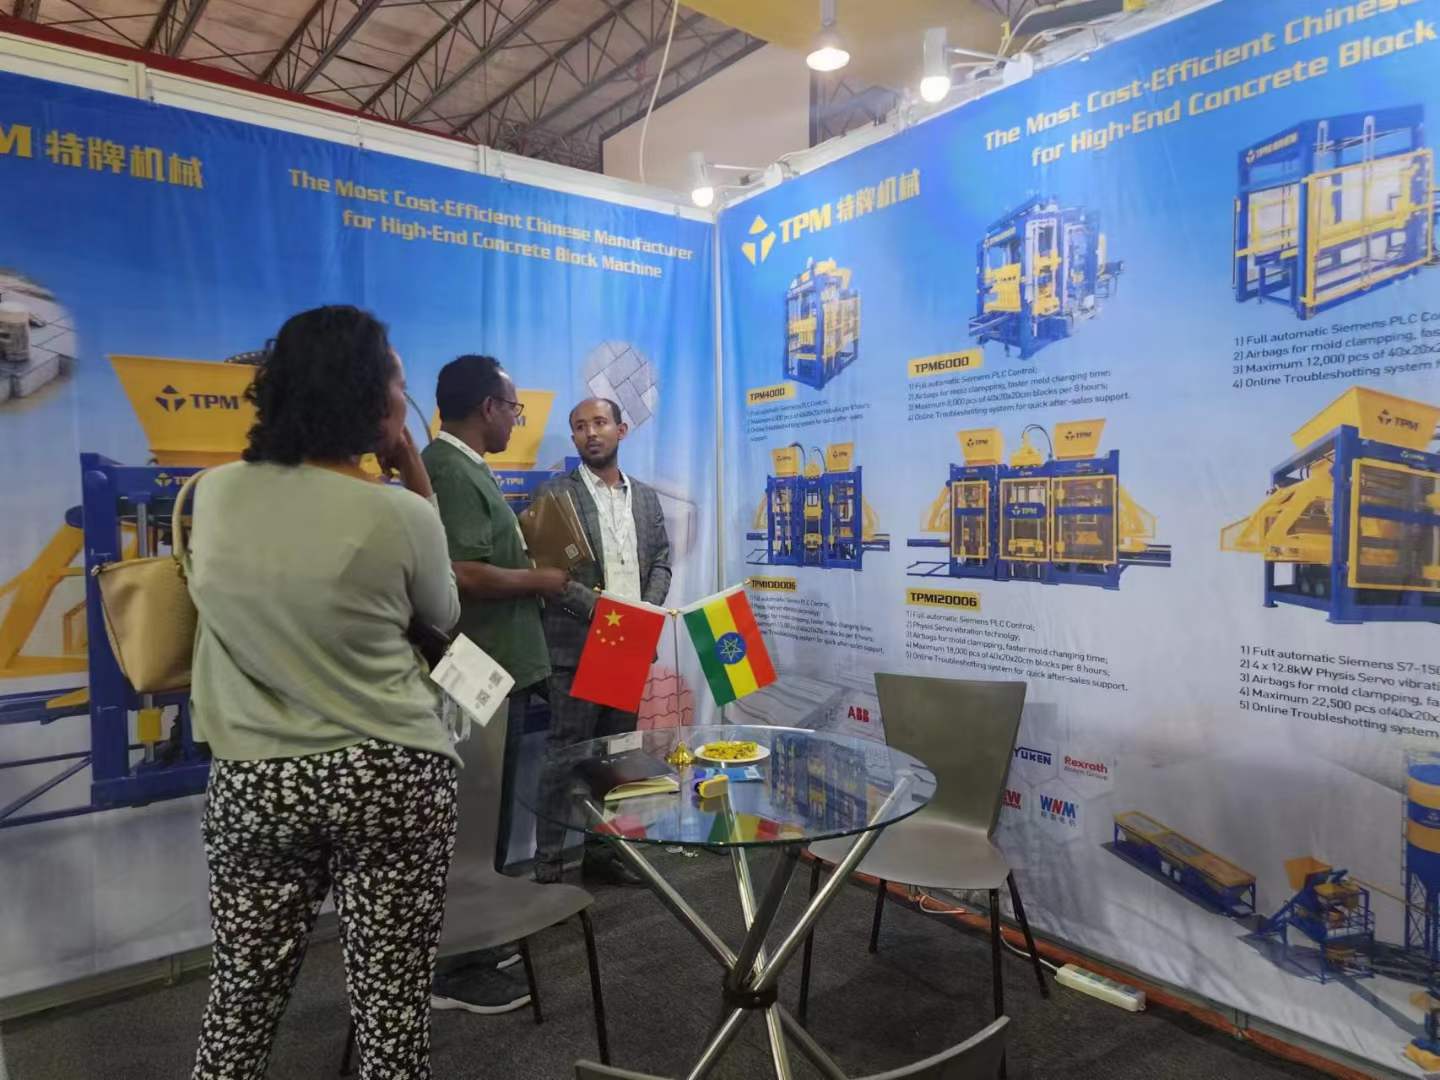 اكتشاف الابتكار في معرض البناء BIG5 إثيوبيا: عرض للتميز من قبل TPM